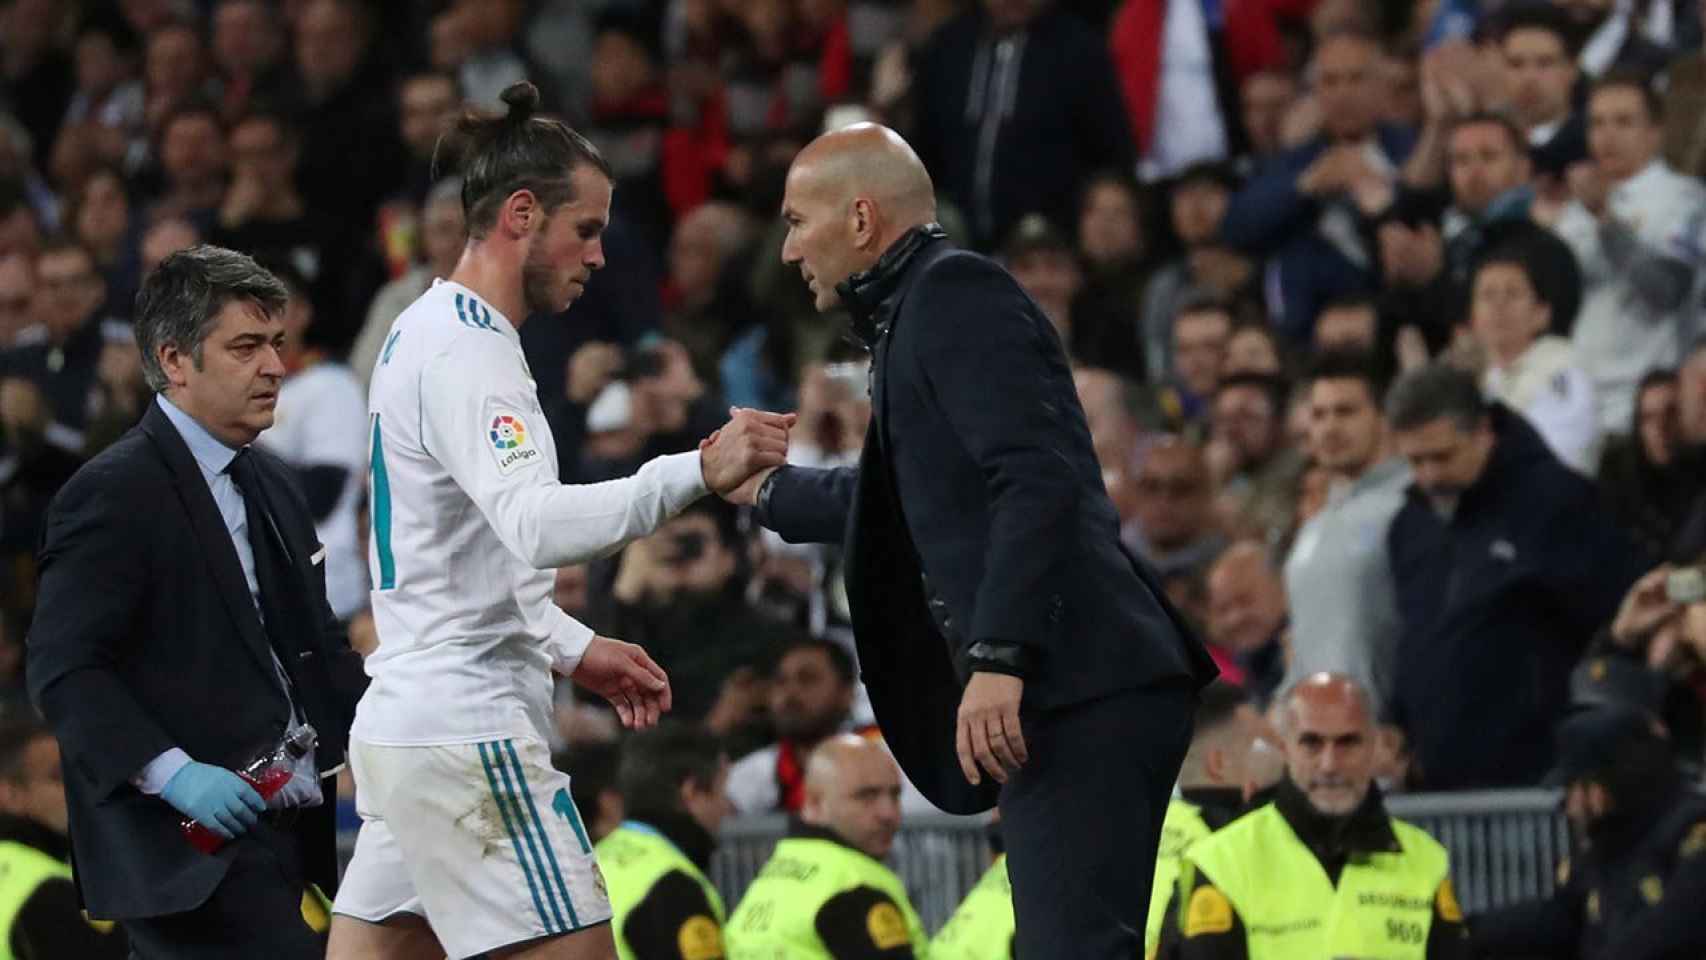 Zinedine Zidane y Gareth Bale en un encuentro del Real Madrid / EFE